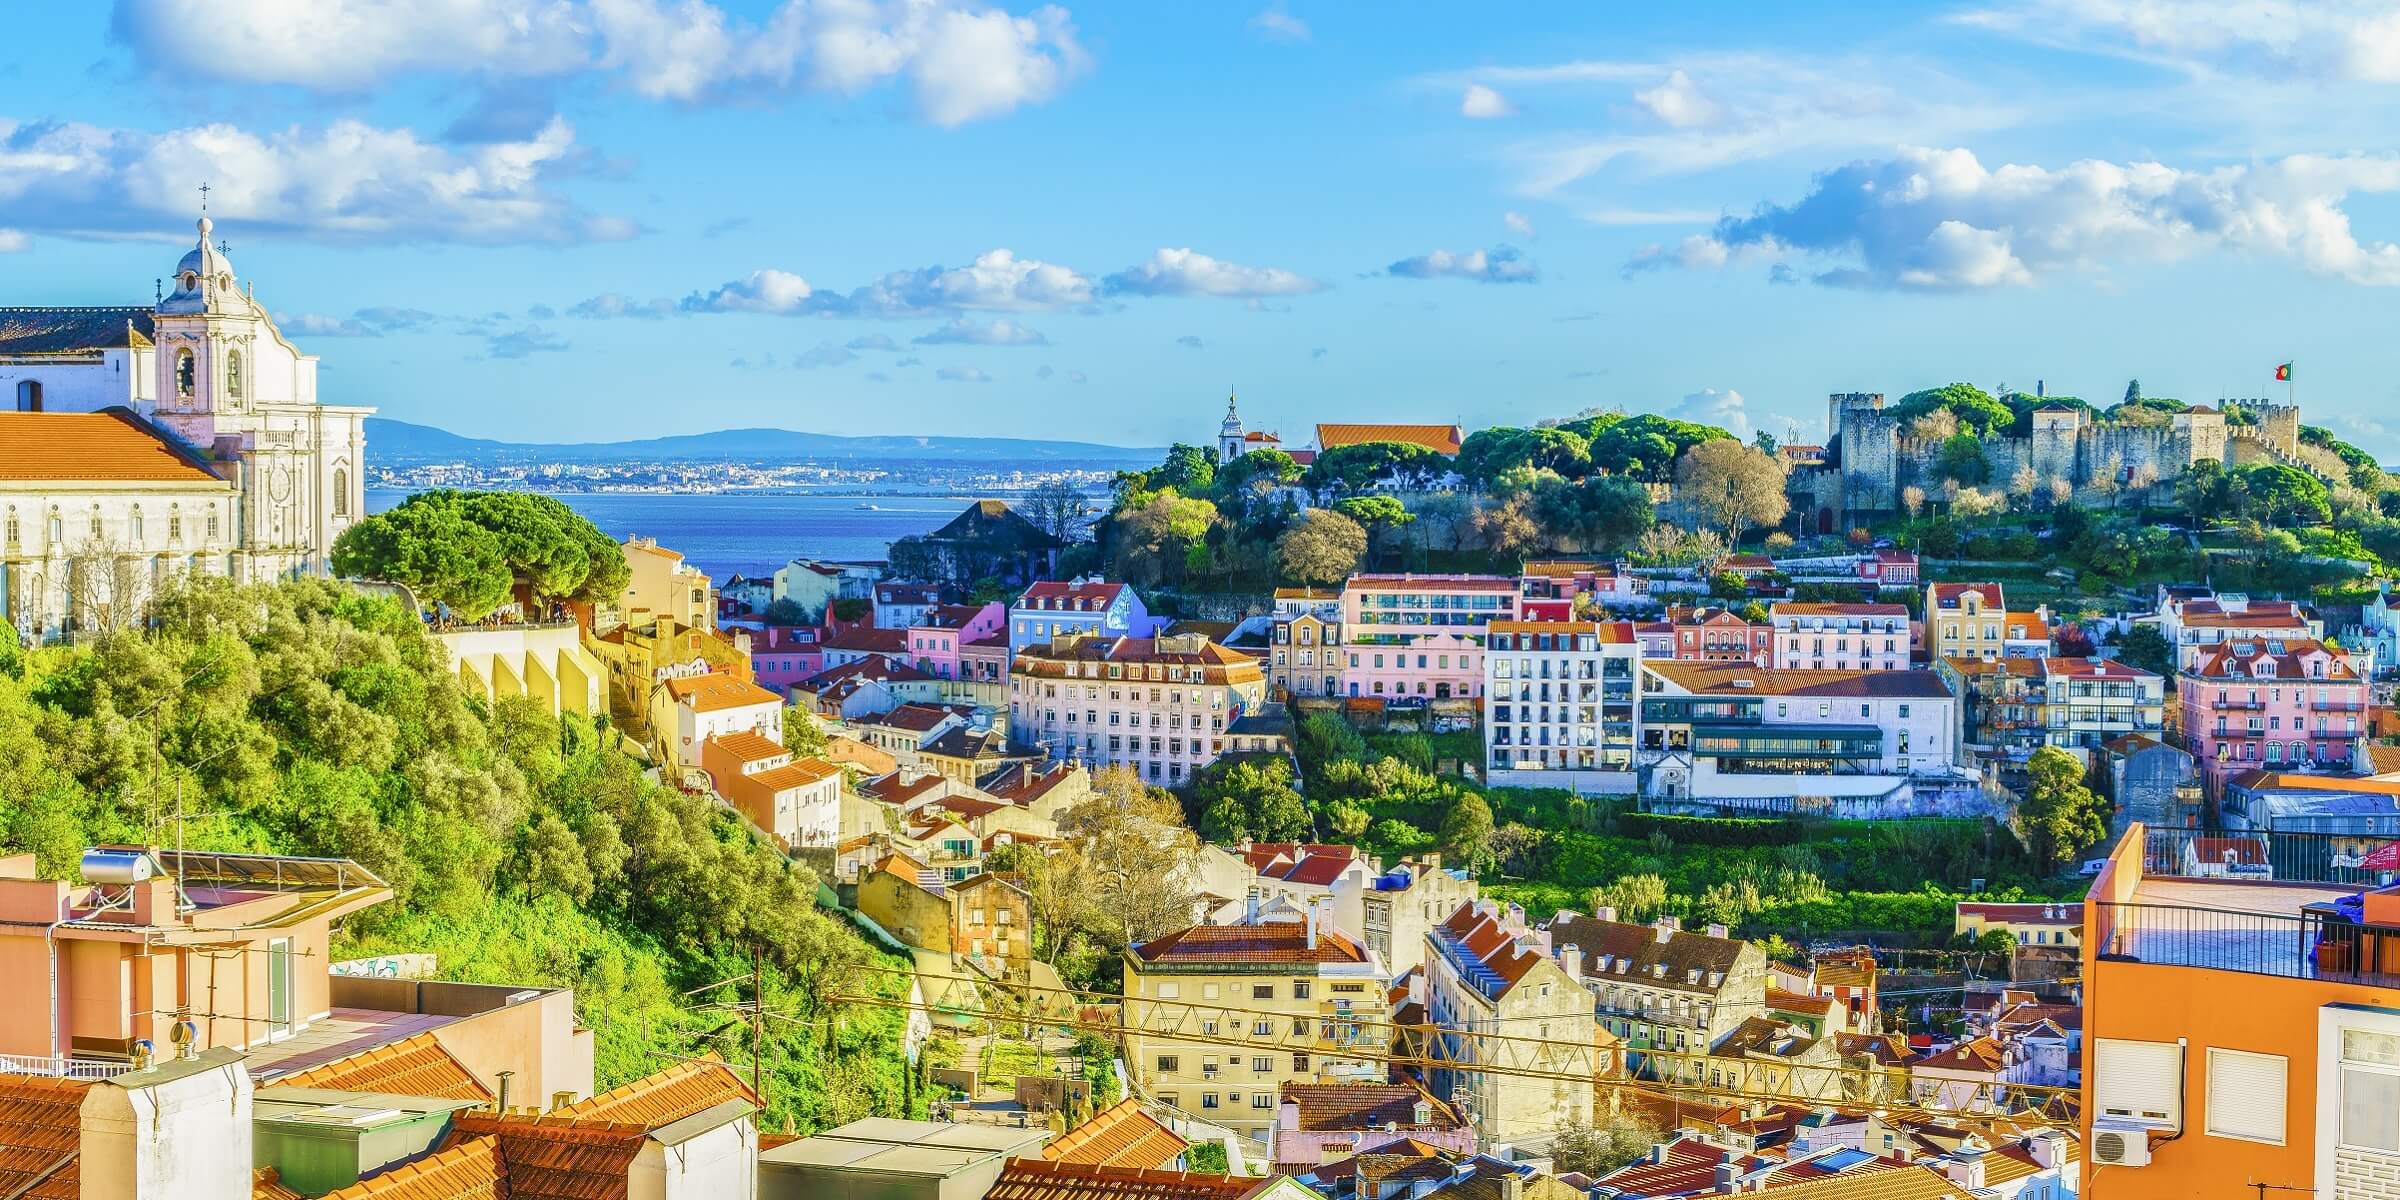 Lissabon, die Schöne am Tejo, umgibt der unwiderstehliche Charme vergangener Zeiten.